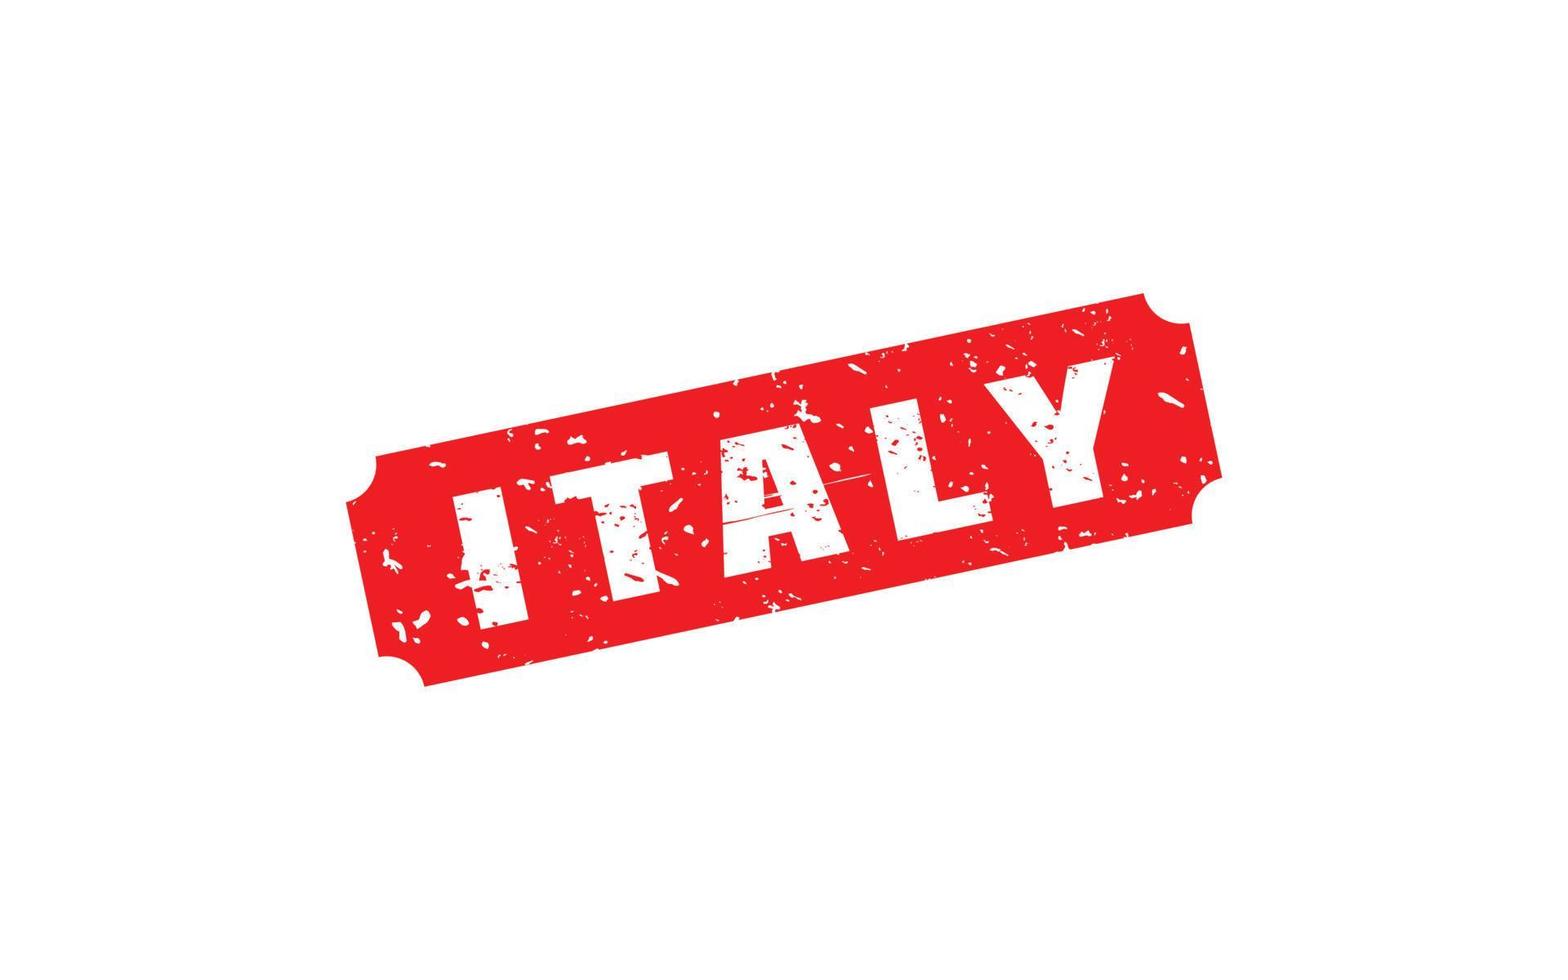 Italien Stempelgummi mit Grunge-Stil auf weißem Hintergrund vektor